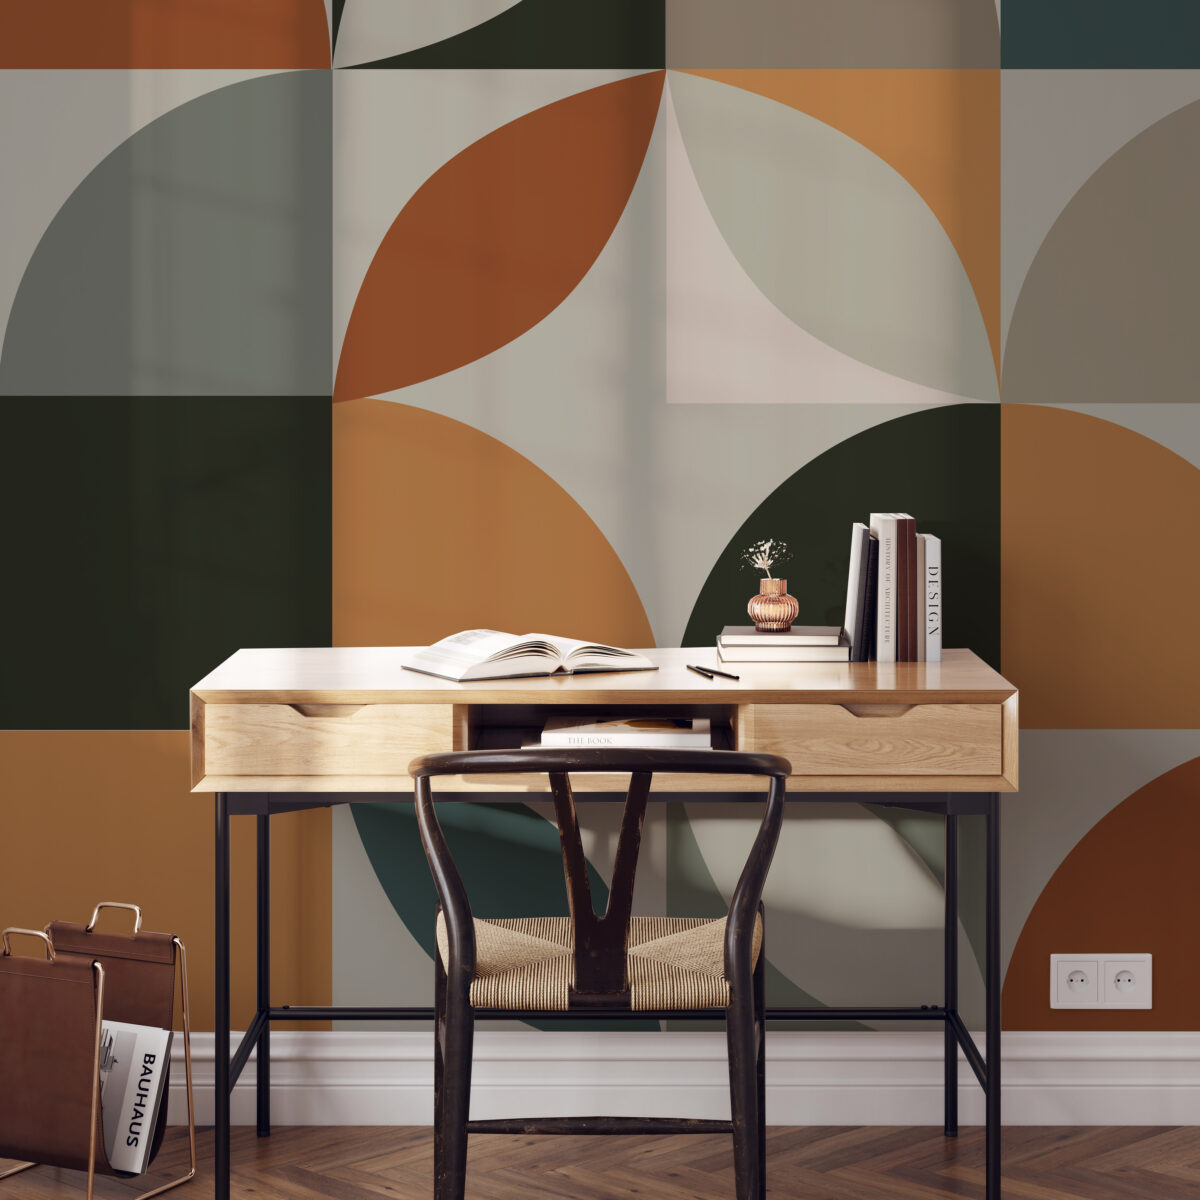 Papel tapiz con estilo Bauhaus para decorar oficinas
